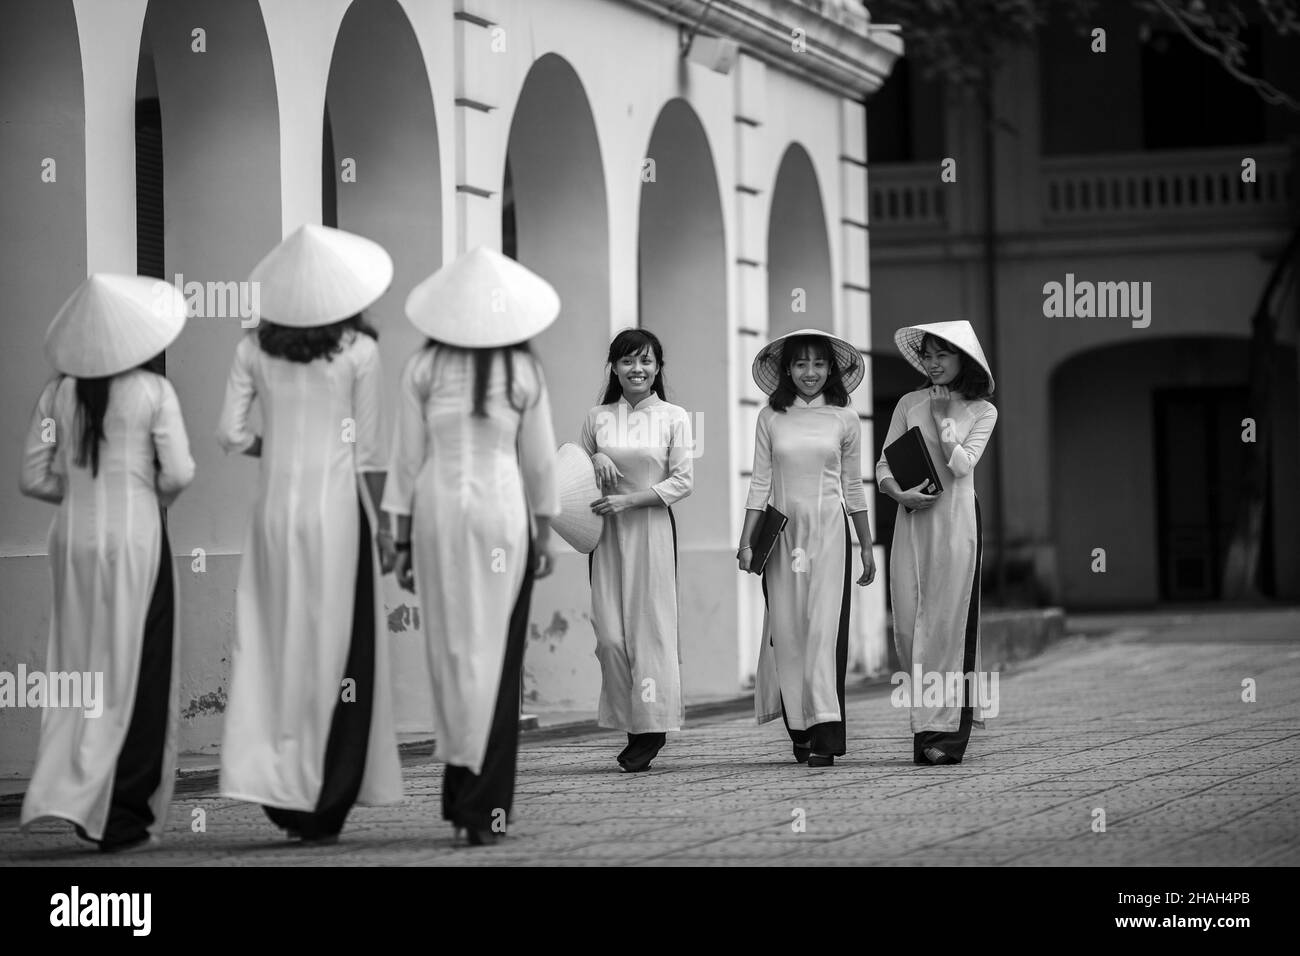 Kleid Ao Dai ist seit langem ein traditionelles Kostüm und ein typisches kulturelles Merkmal der vietnamesischen Nation. Durch jede Periode der Entwicklung des hist Stockfoto